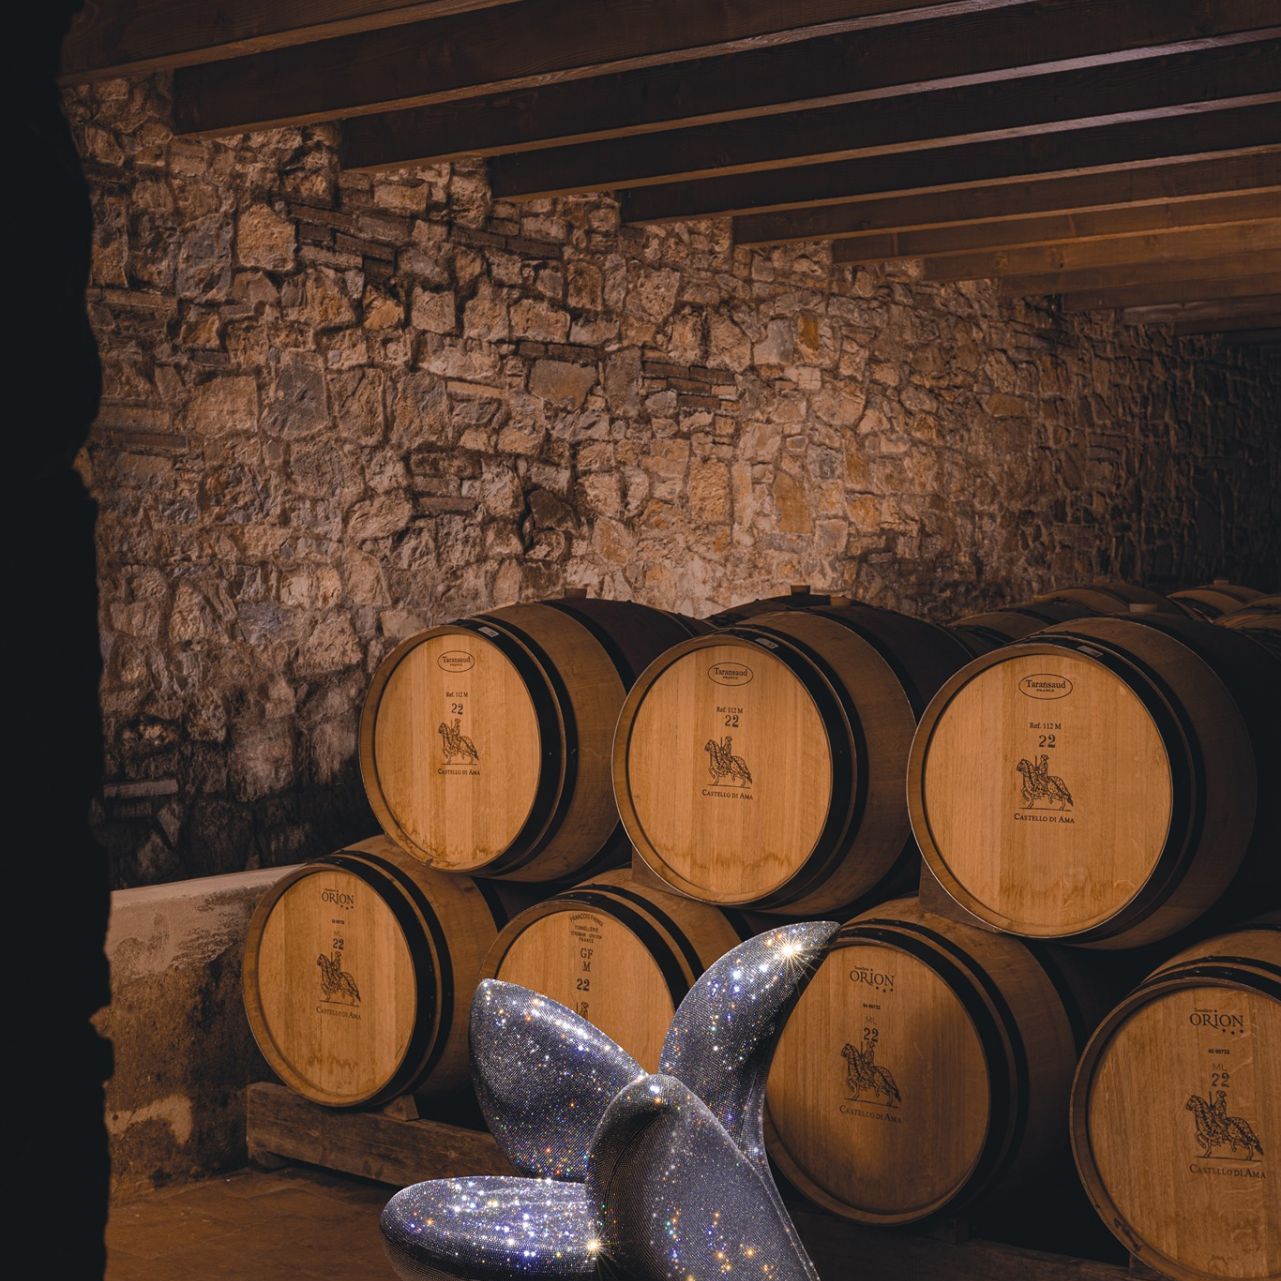   Getsuen . Getsuen Diamond cristallisé avec Swarovski brille à travers les barils qui gardent le vin précieux de Castello di Ama. 